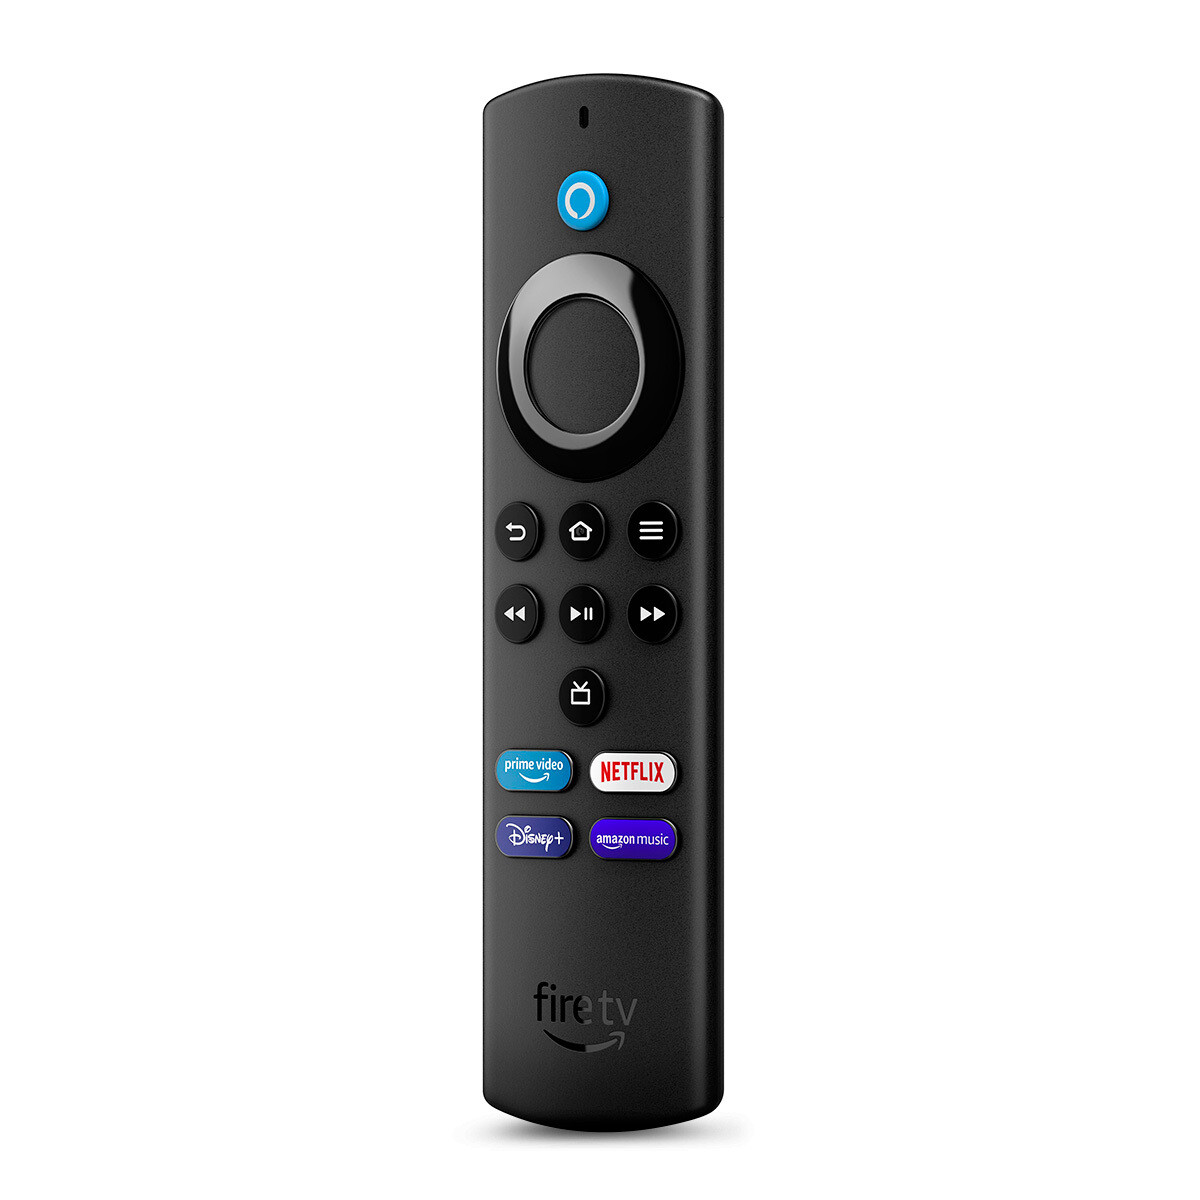 Reproductor Streaming Amazon Fire TV Stick Lite Full HD con Control de Voz Alexa Negro